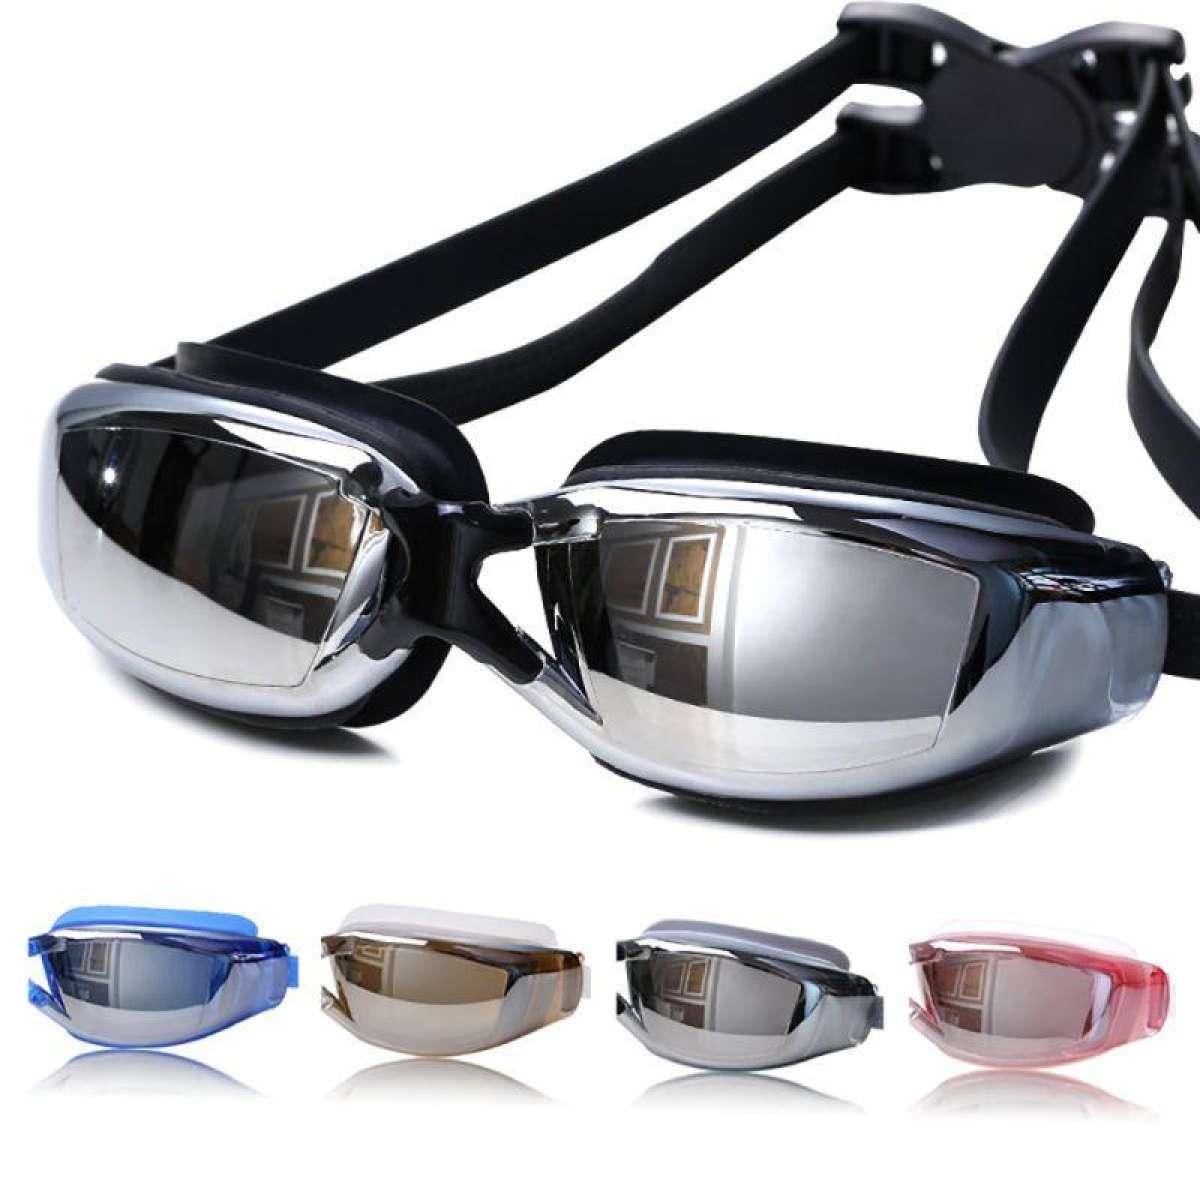 Womdee ชุด 5 ชิ้นผู้หญิงผู้ชาย Anti FOG UV ป้องกันการเล่นเซิร์ฟการว่ายน้ำ Goggles Professional แว่นตากันน้ำพร้อมหมวกว่ายน้ำที่อุดหูที่อุดจมูกชุด - INTL